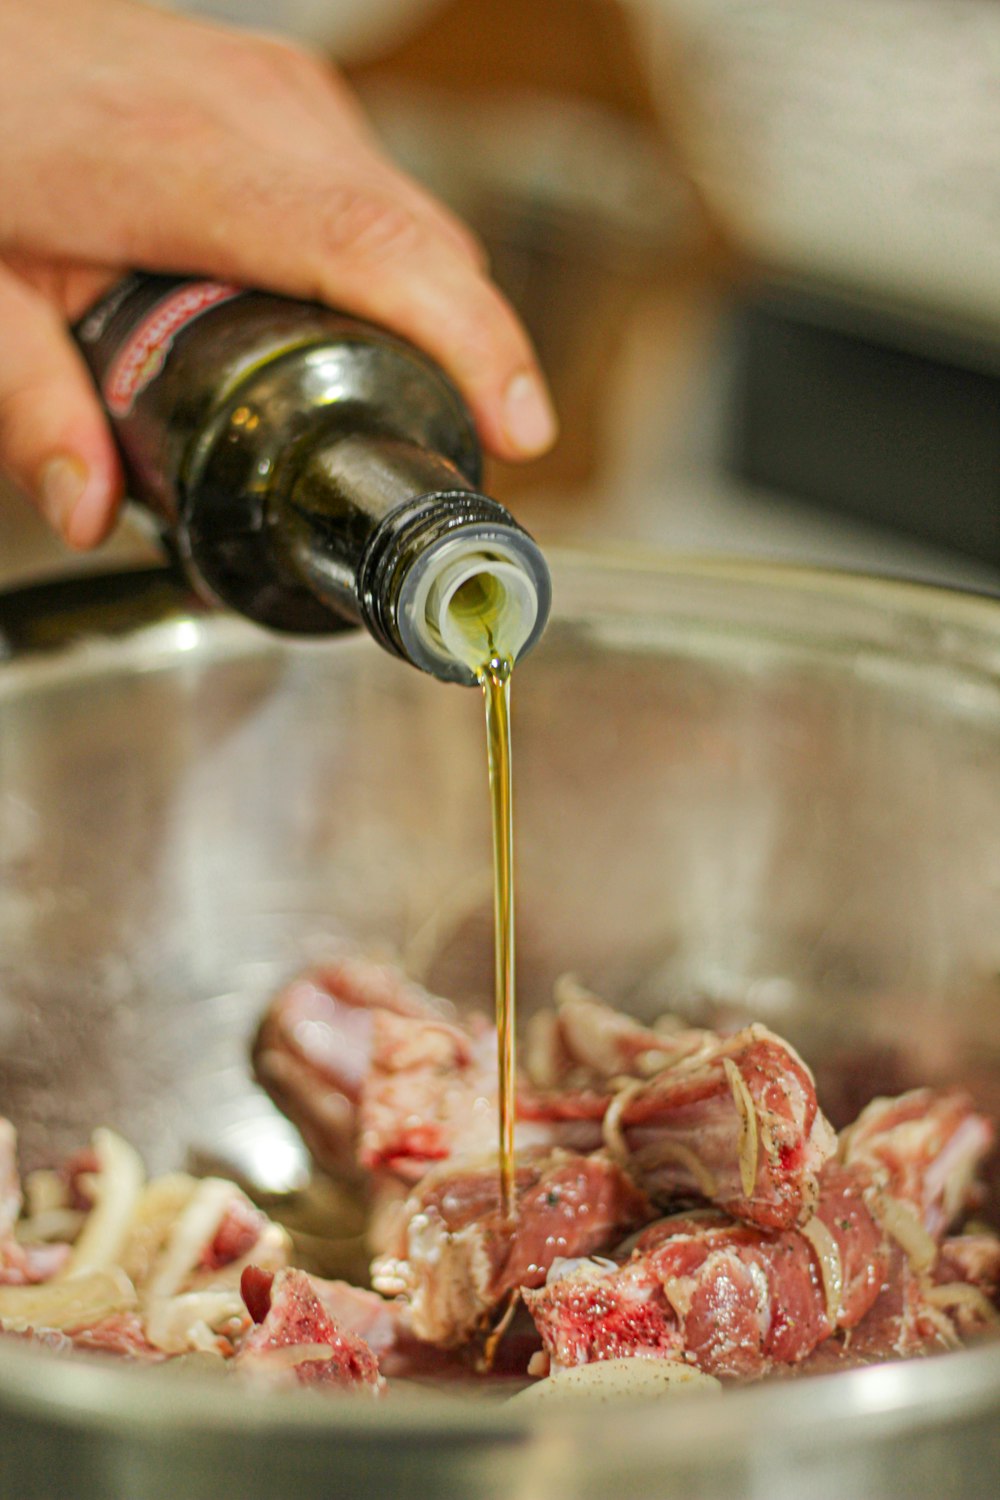 une personne versant de l’olive dans un pot rempli de viande